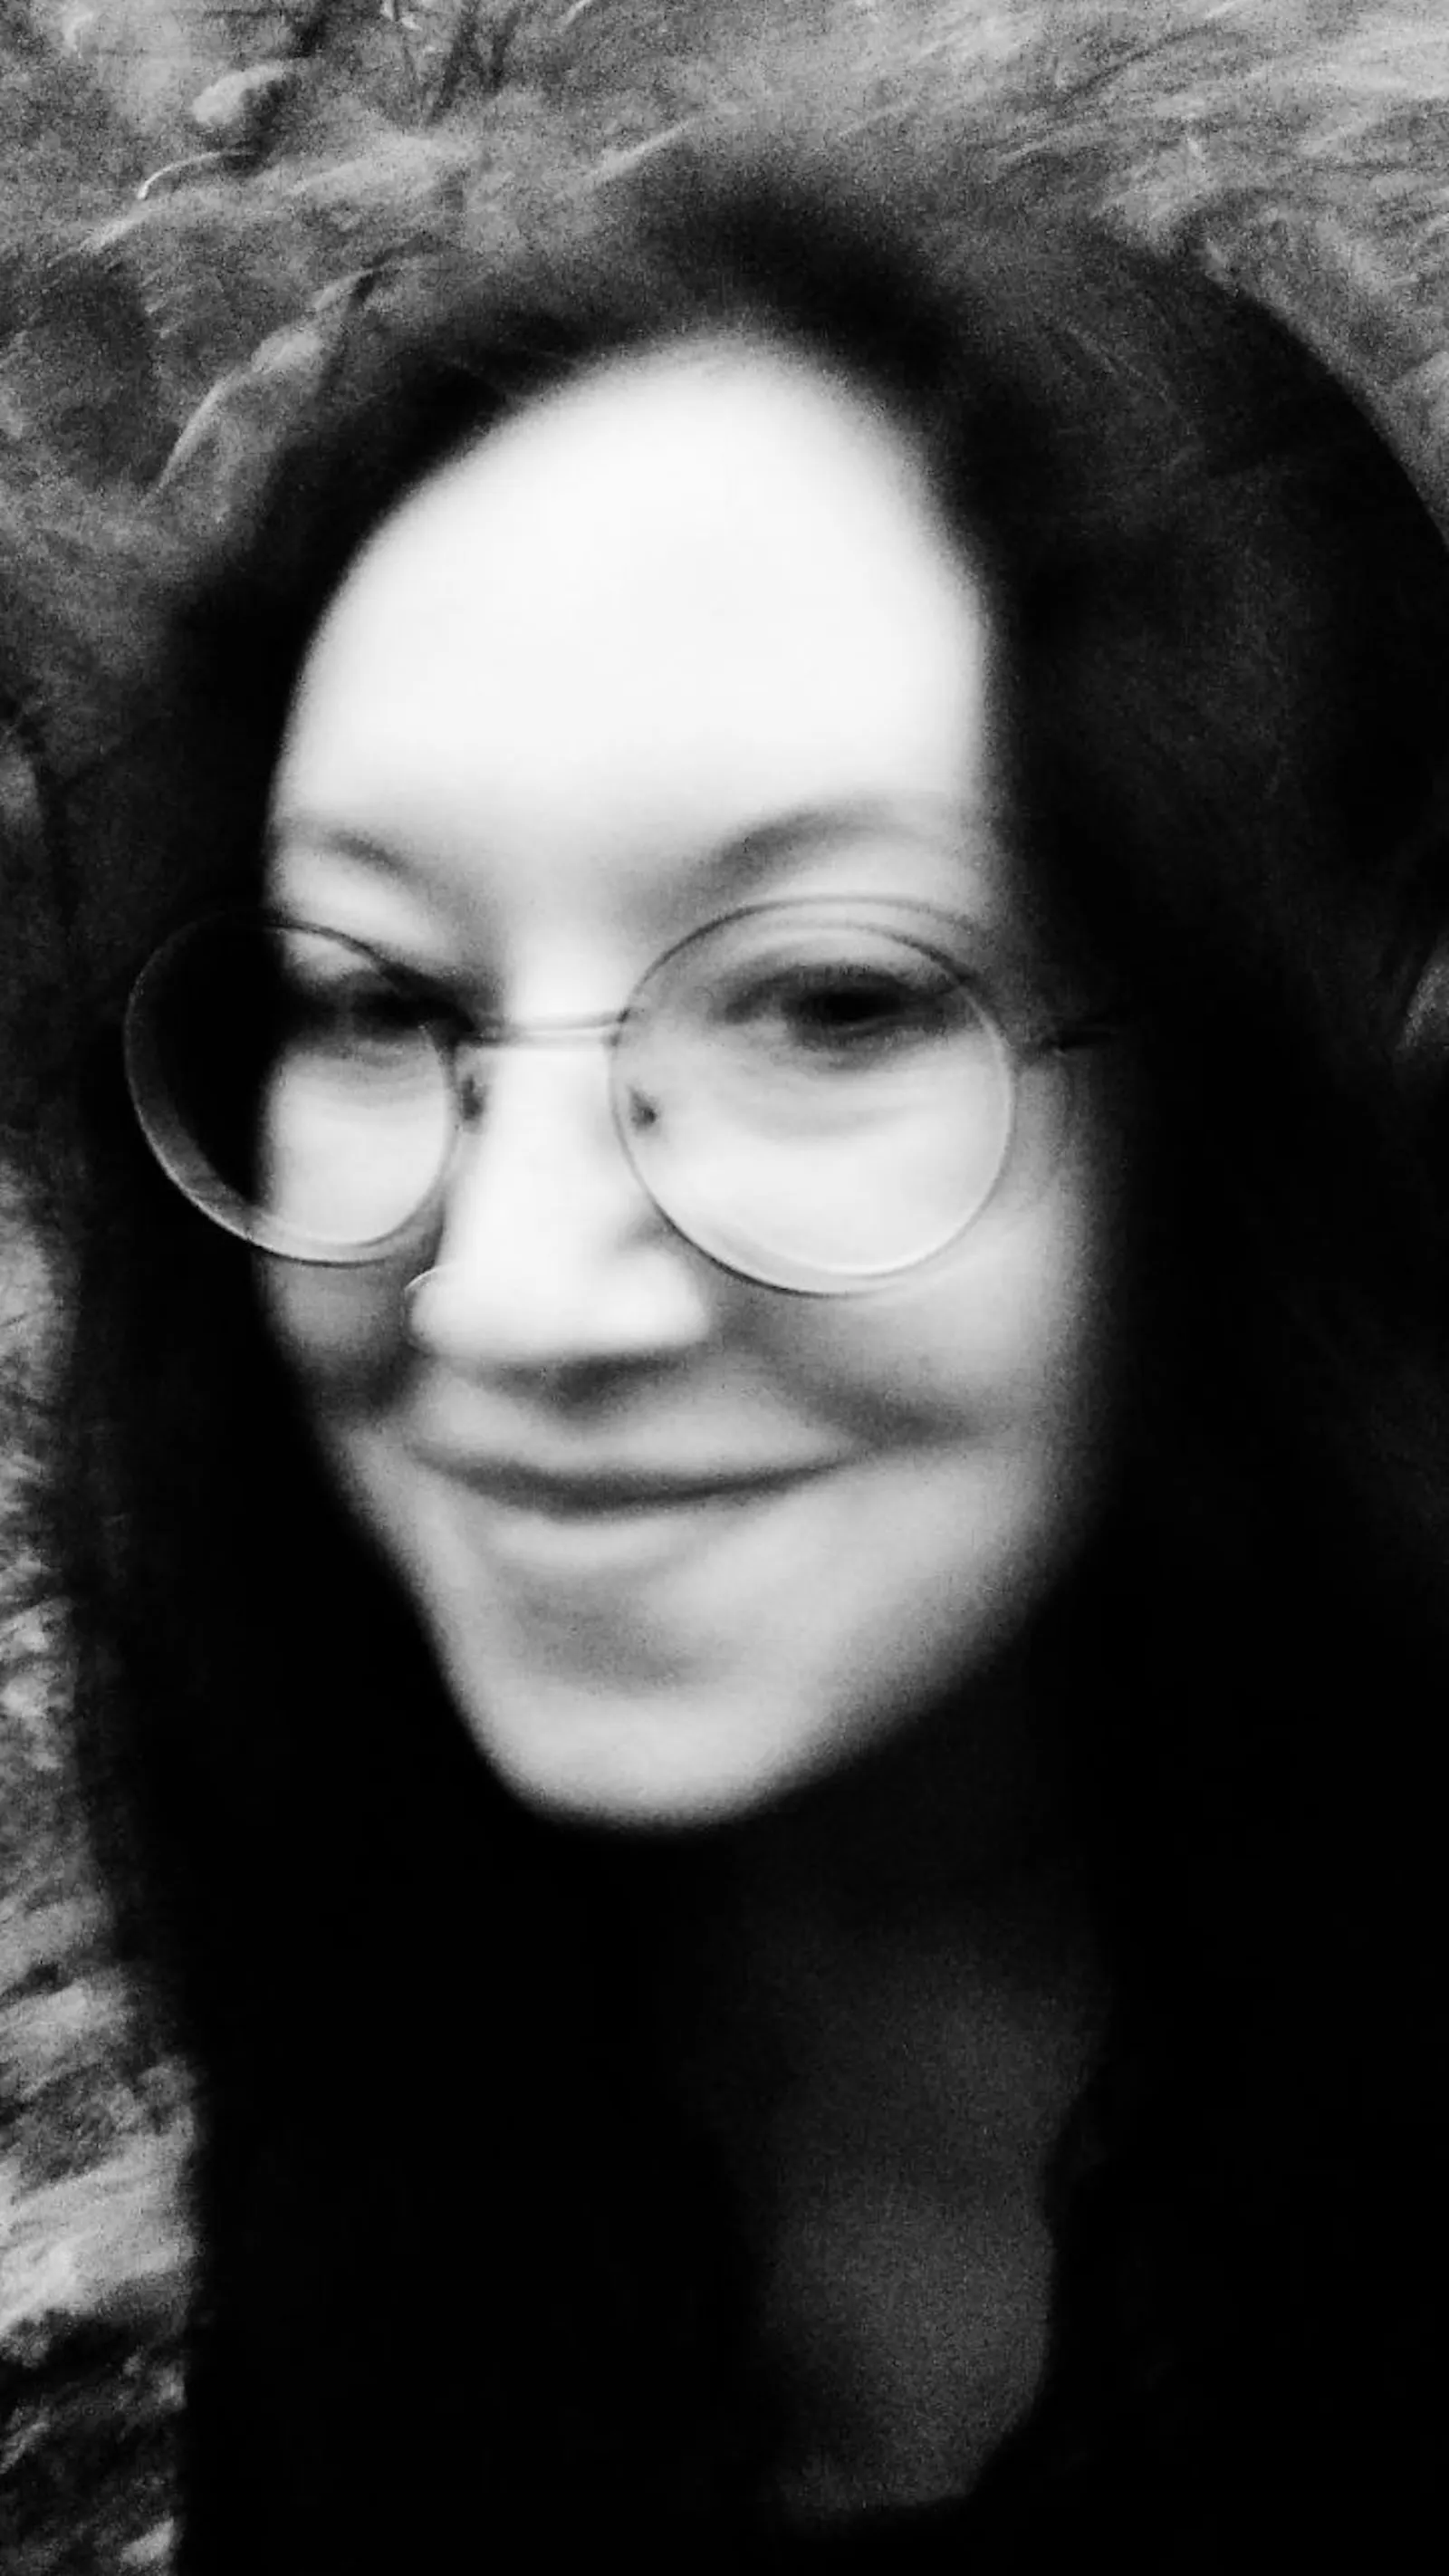 Schwarz-weiß Fotografie, verwackelt. Eine Frau lächelt in die Kamera, sie trägt eine Brille und die dunklen Haare offen. Im Hintergrund sind Bäume und Sträucher.